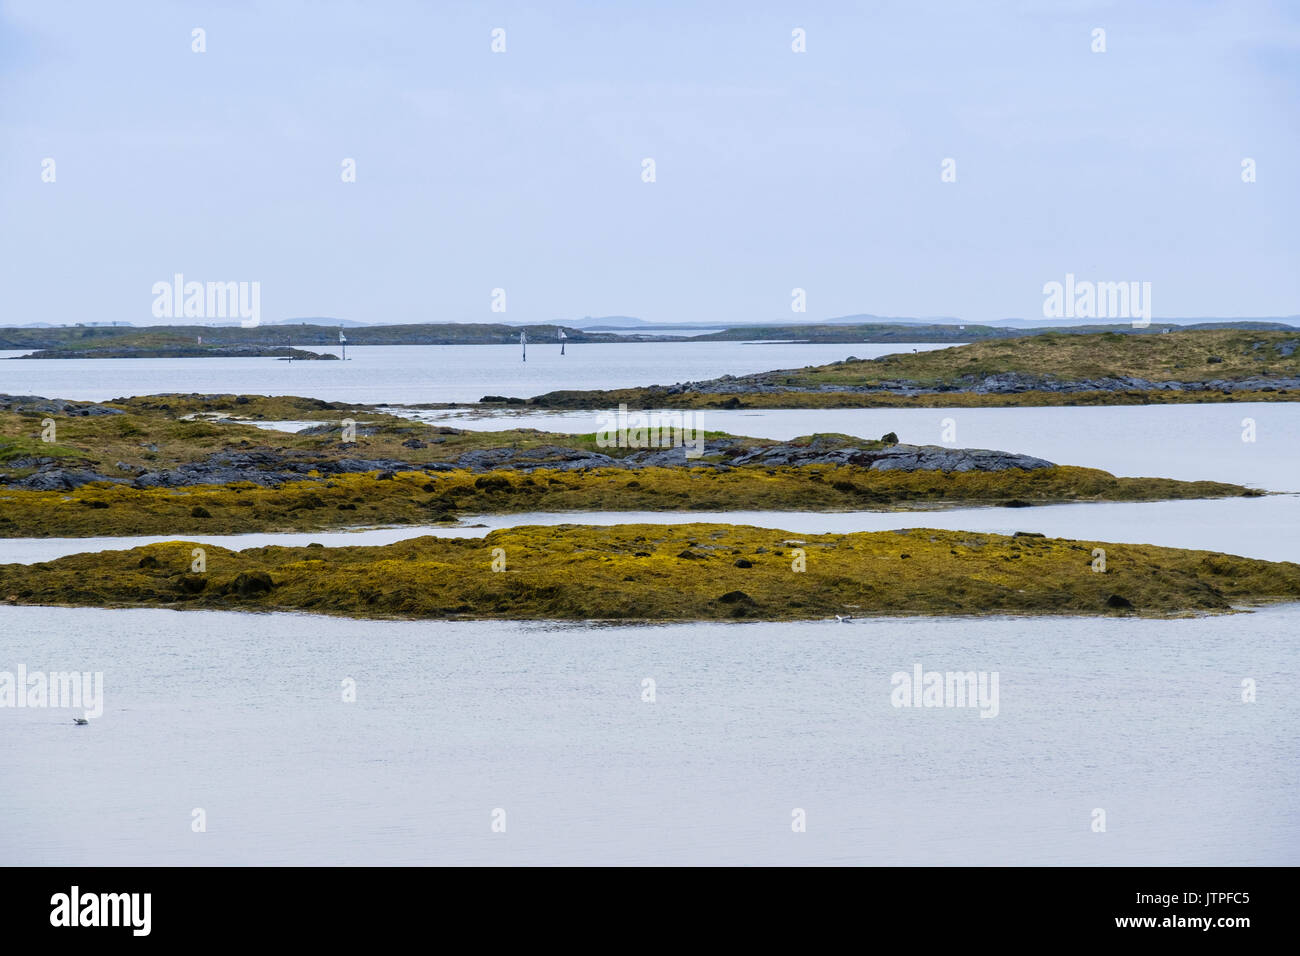 Arktis Strandflat Landschaft mit kleinen Inseln und Inselchen in Trollfjell Geopark an der Westküste. Vega-Insel, Nordland, Norwegen, Skandinavien Stockfoto